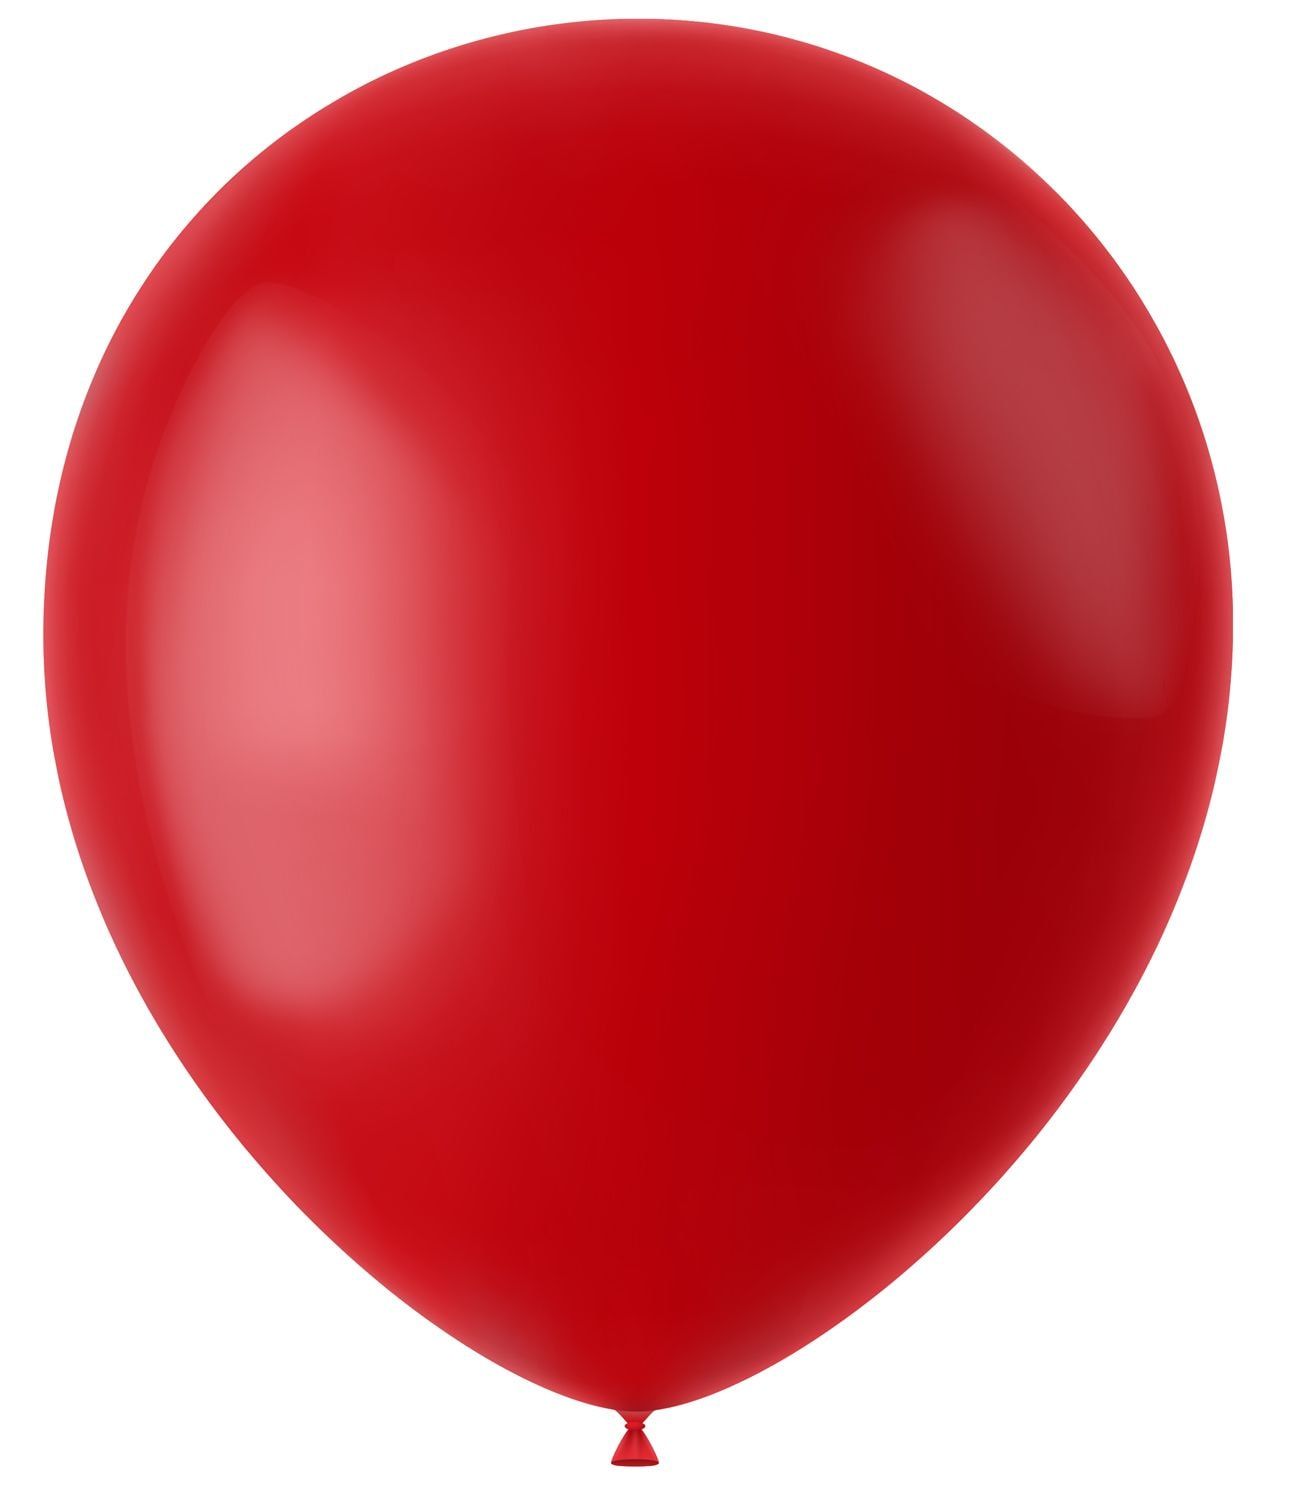 Ruby rode mat ballonnen 100 stuks